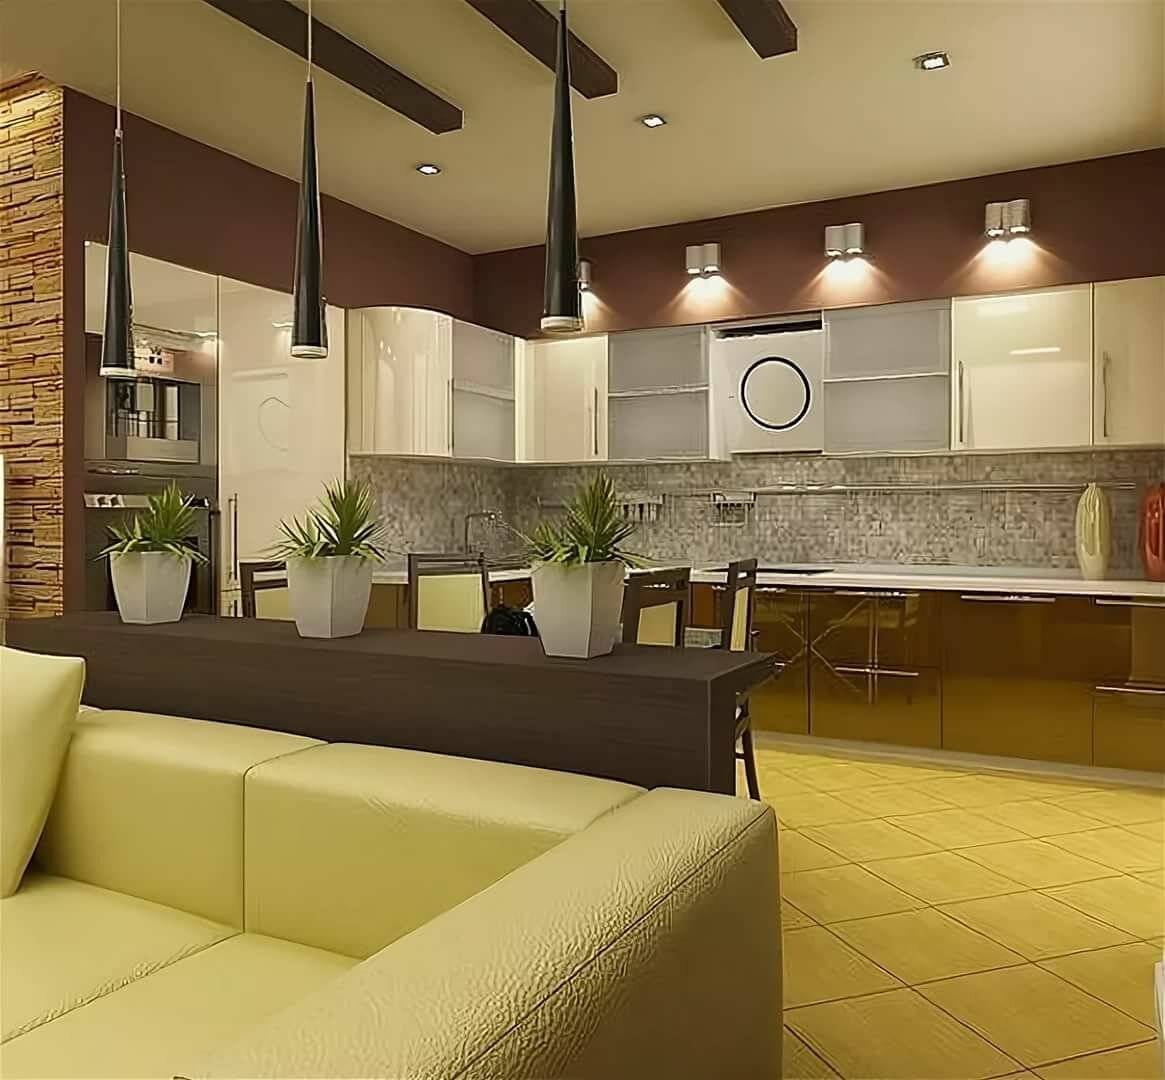 Кухня совмещенная с гостиной: примеры идеального зонирования и комфортной планировки (90 фото дизайна)